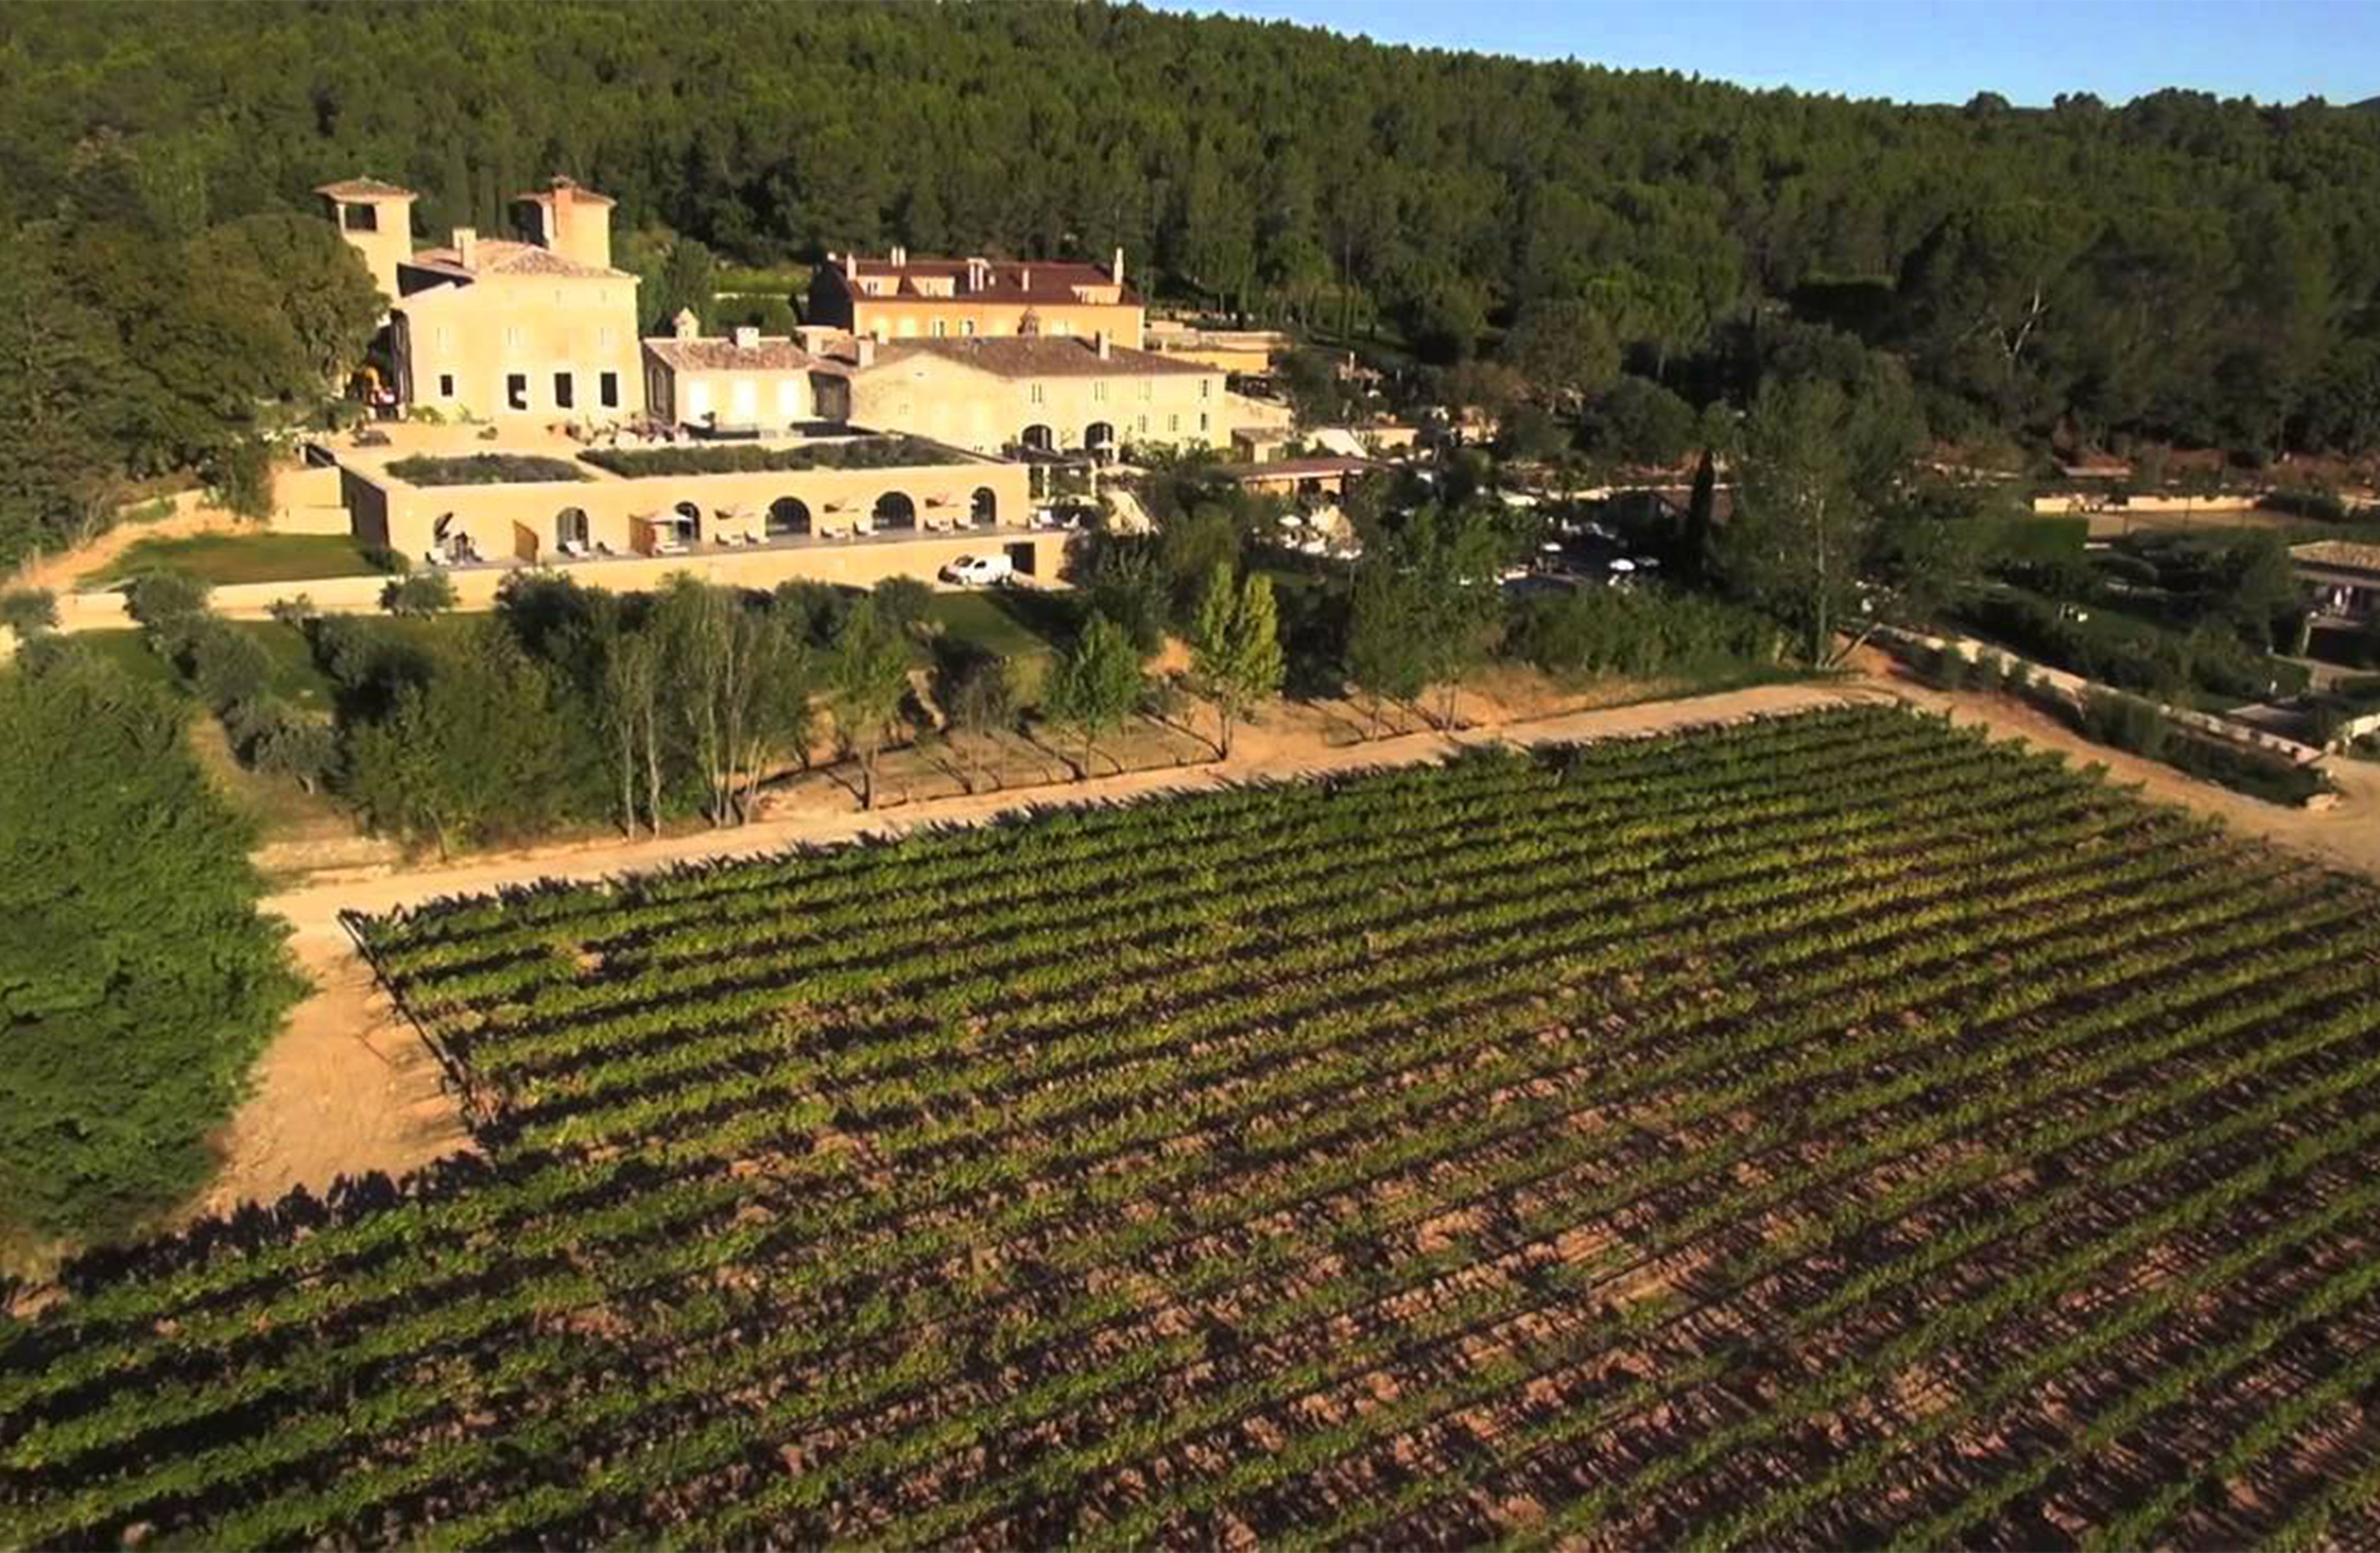 Château de Berne - Héli Wine - Héli Air Monaco 